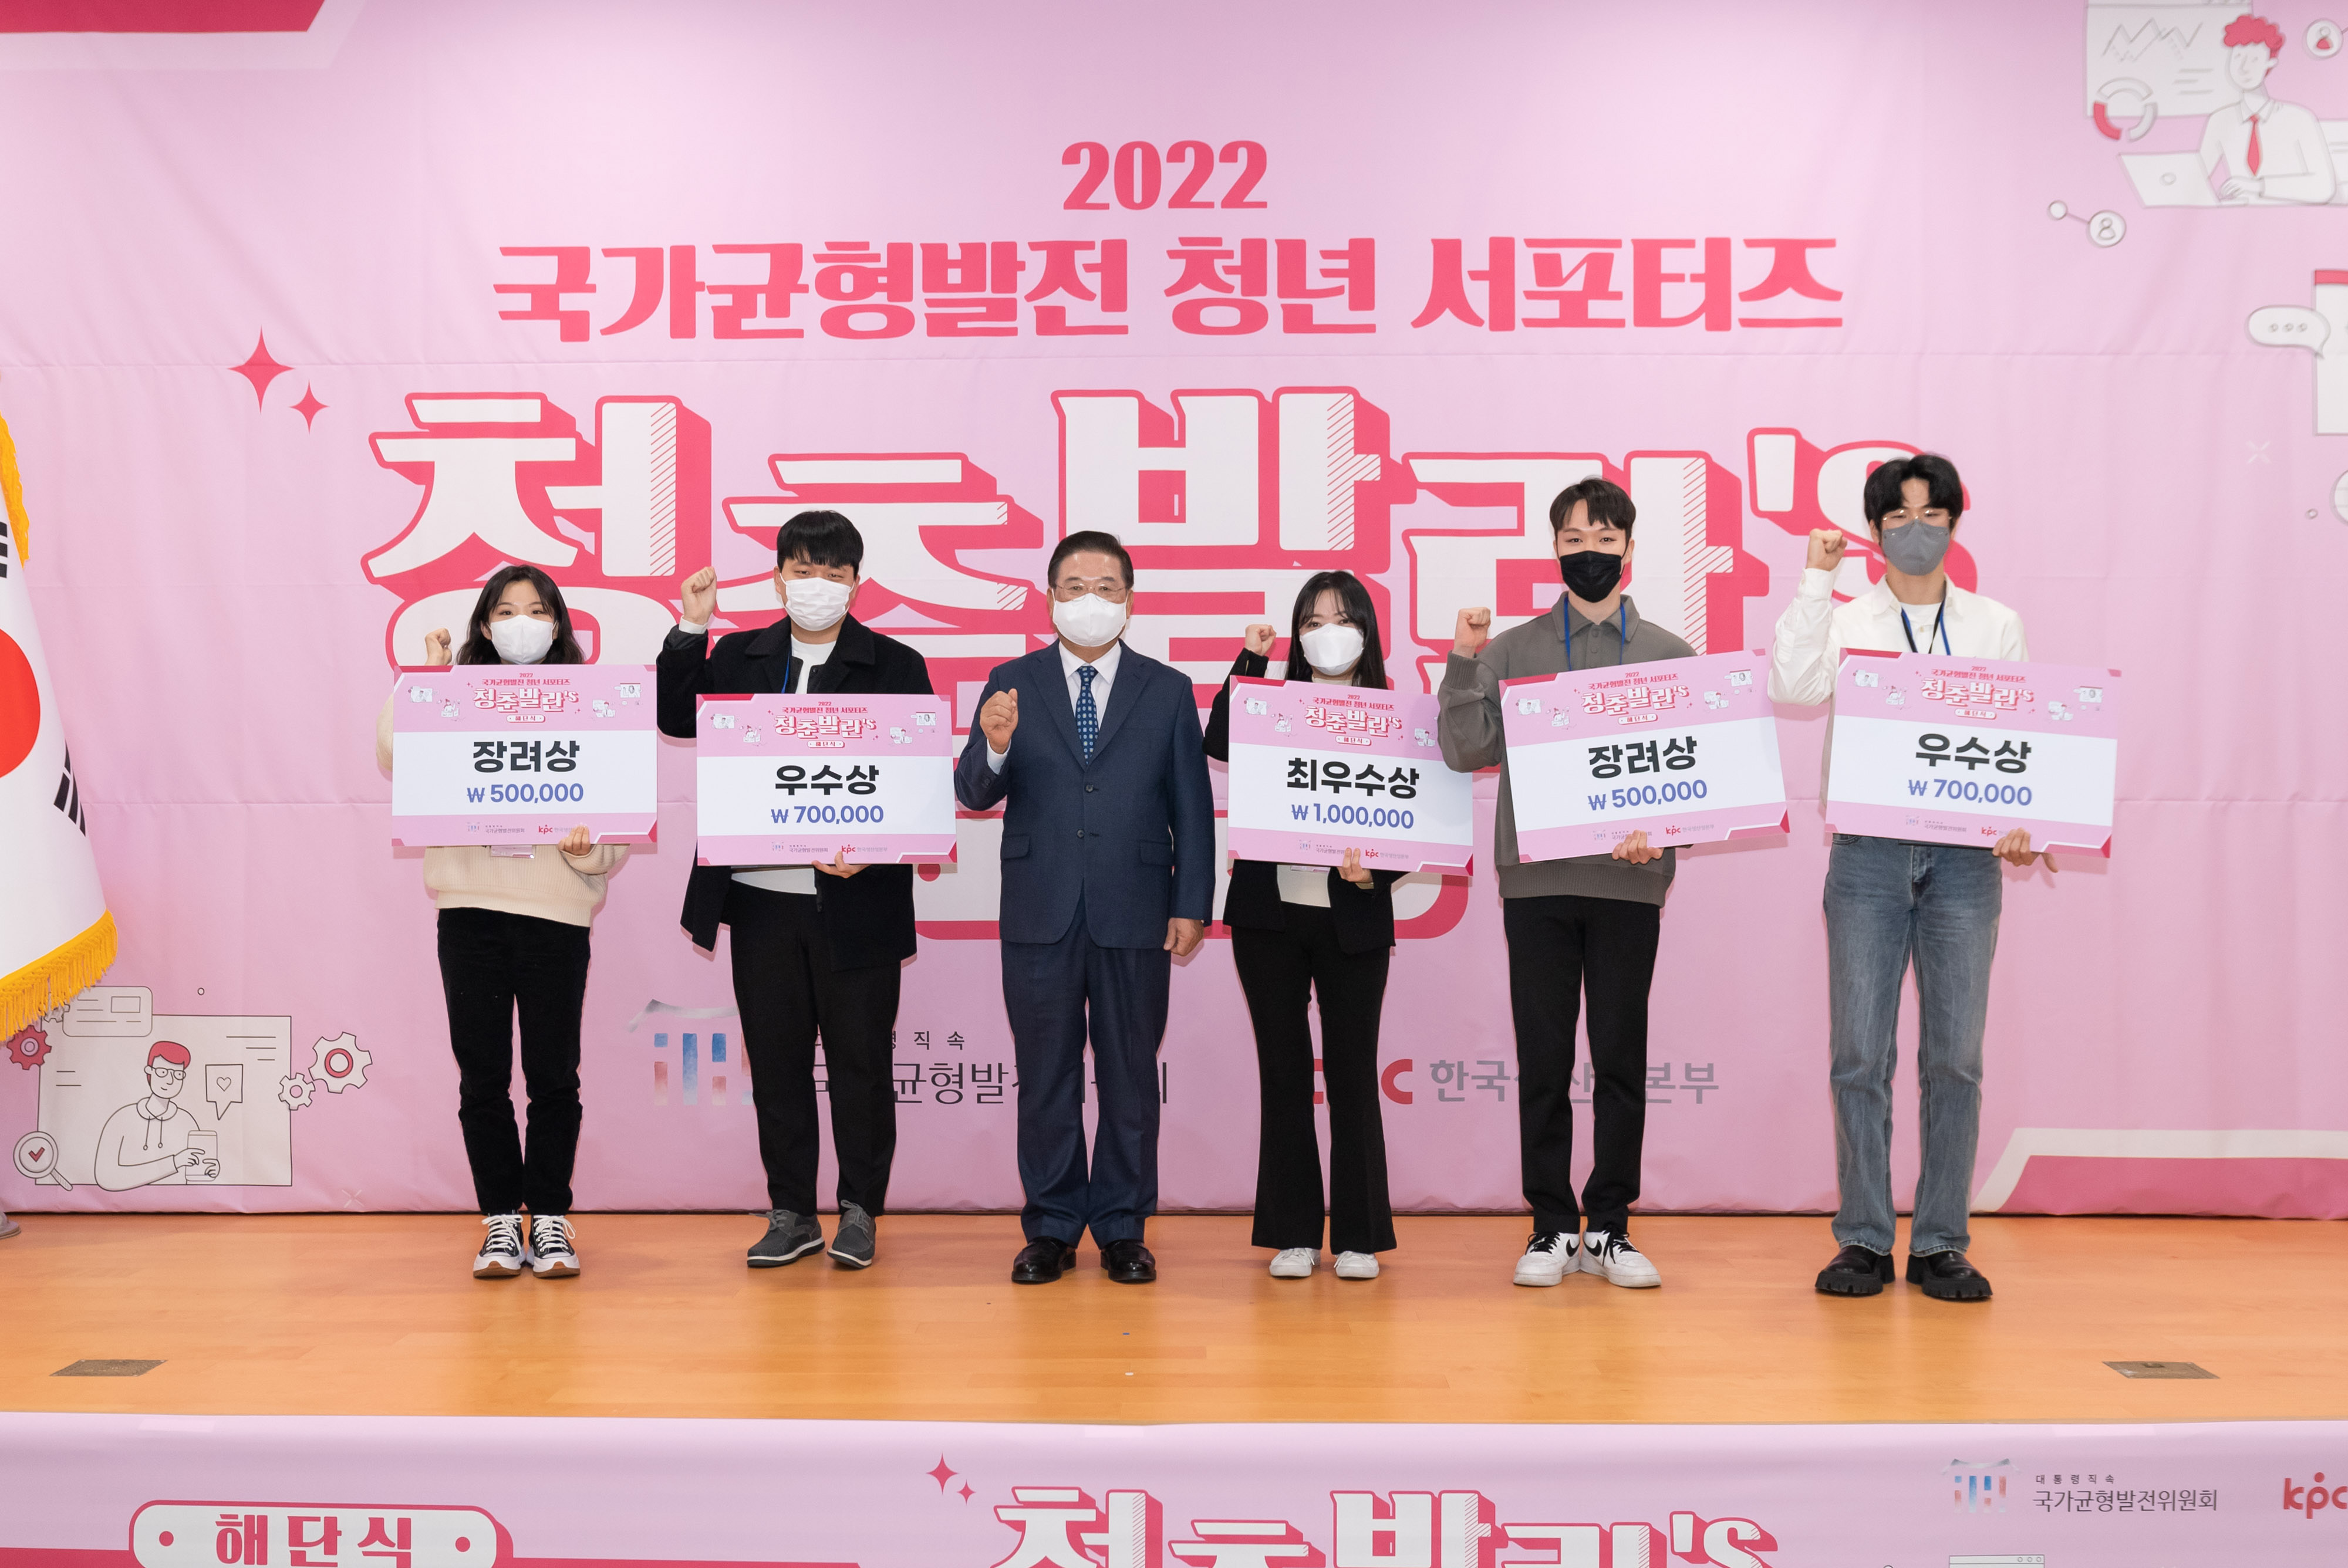 12월 19일 정부세종청사에서 2022 국가균형발전 청년 서포터즈 청춘발란's 해단식이 열렸다.(4)